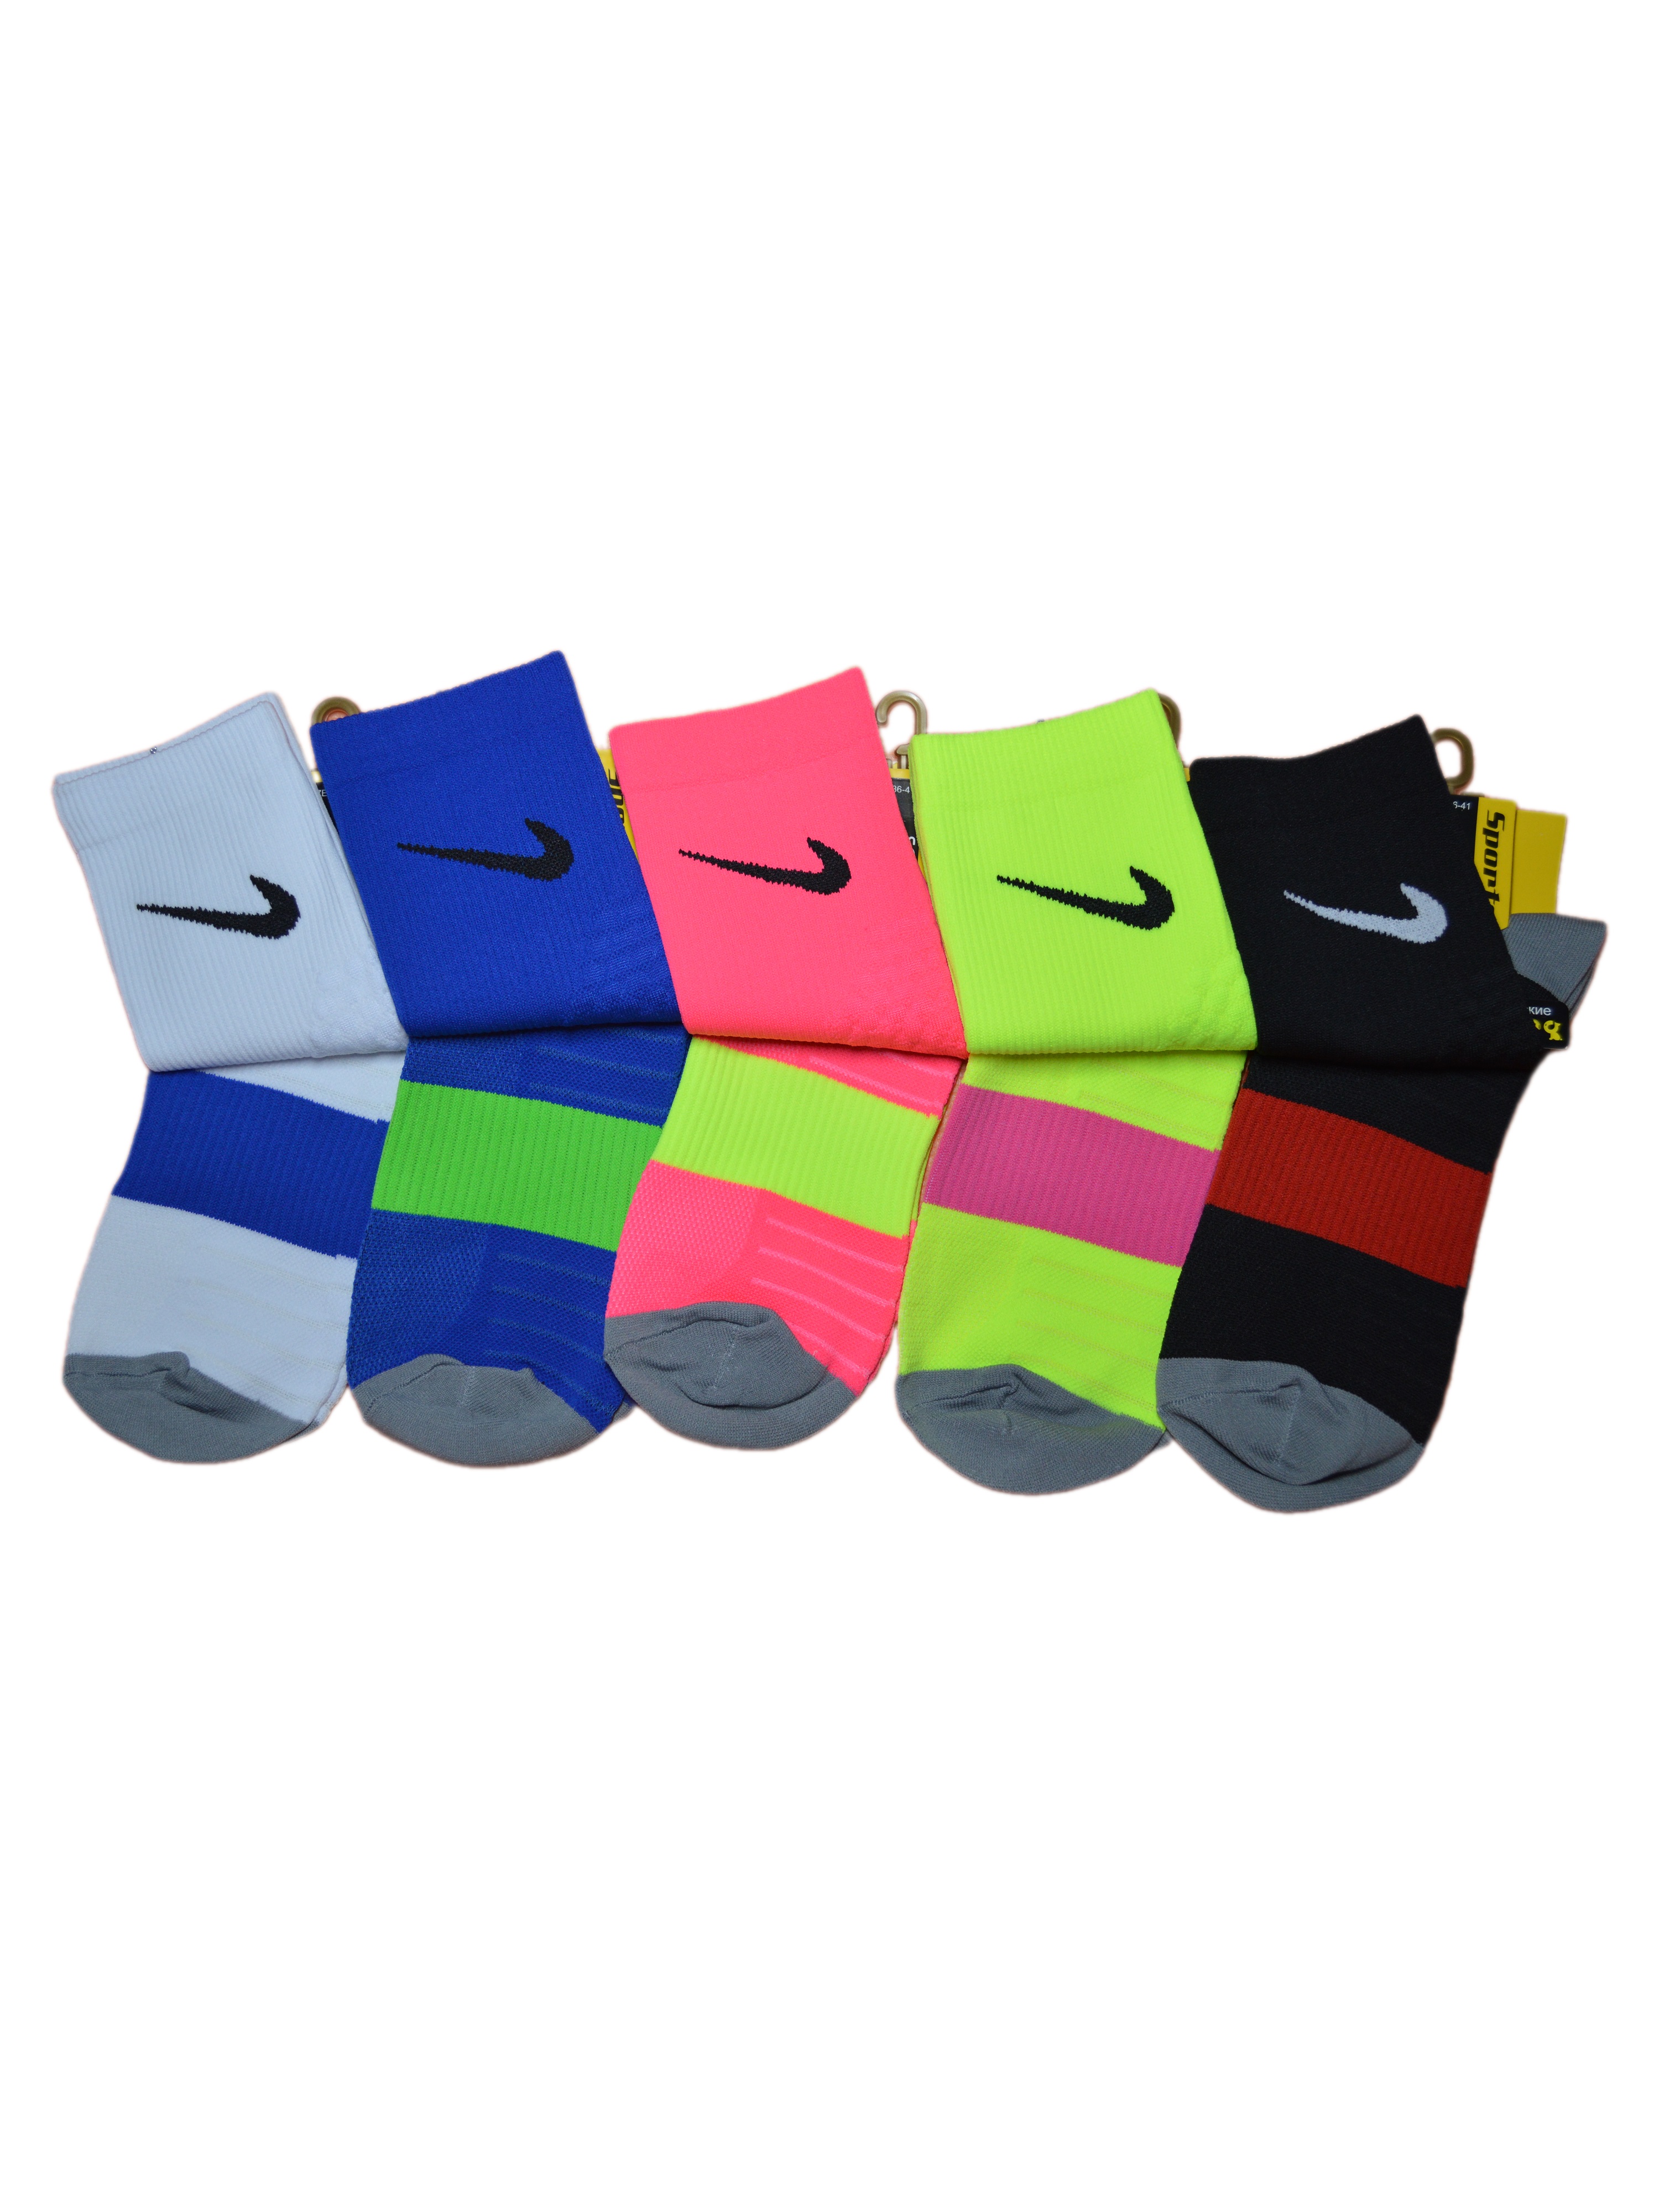 Комплект носков женских Nike NI-SS-Neon_5 разноцветных 36-41, 5 пар